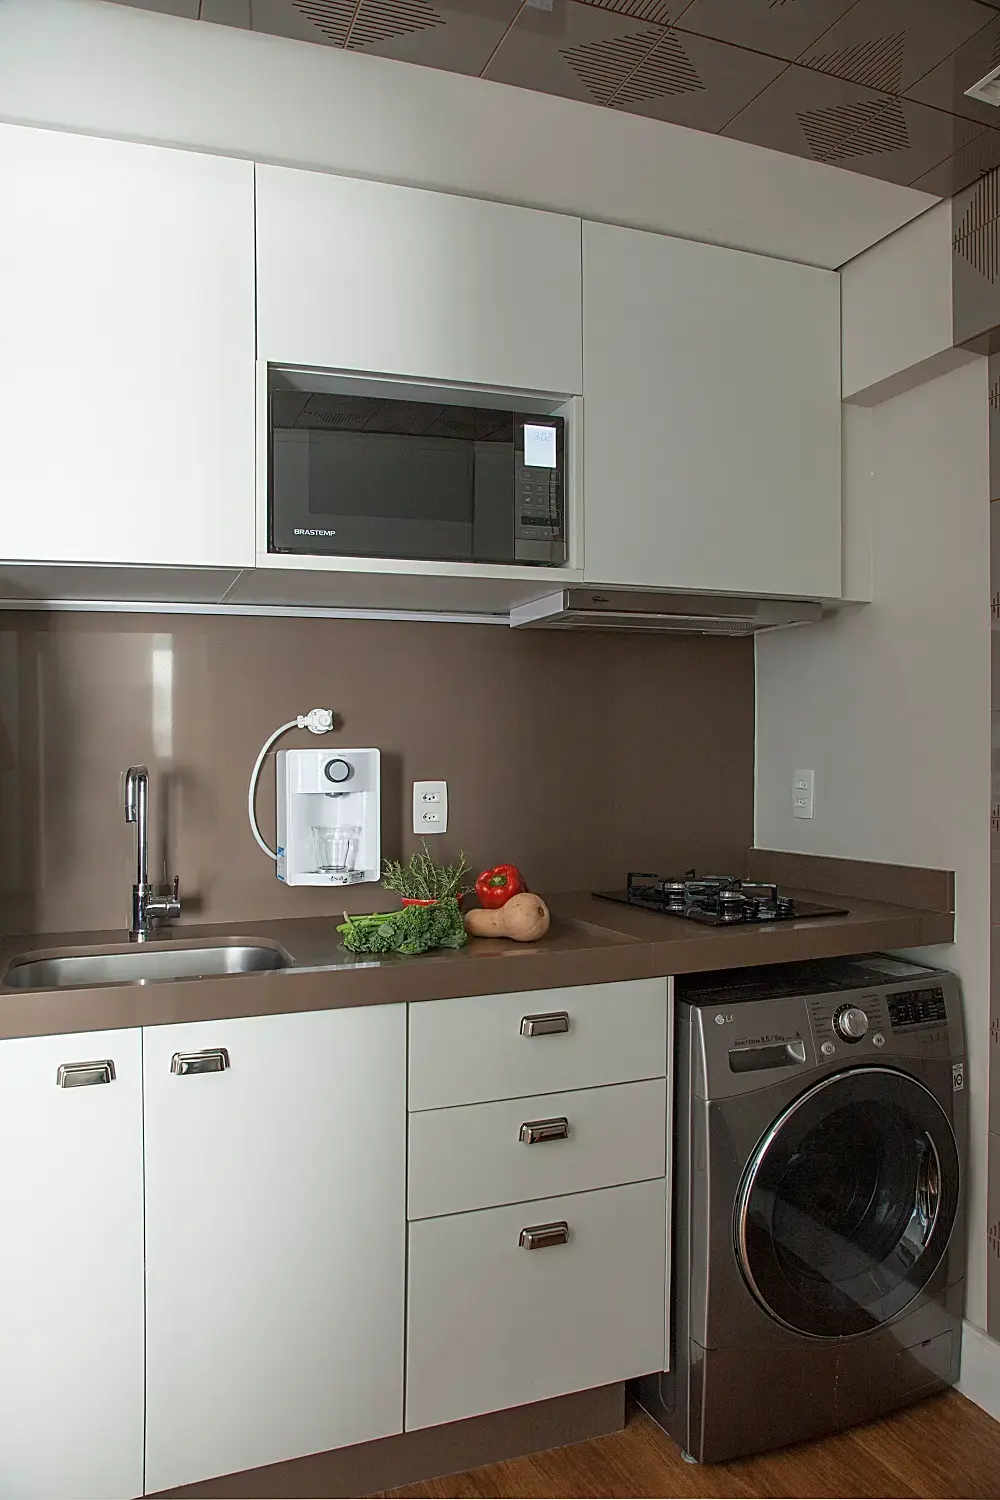 Os armários planejados da cozinha ajudam na otimização espaço